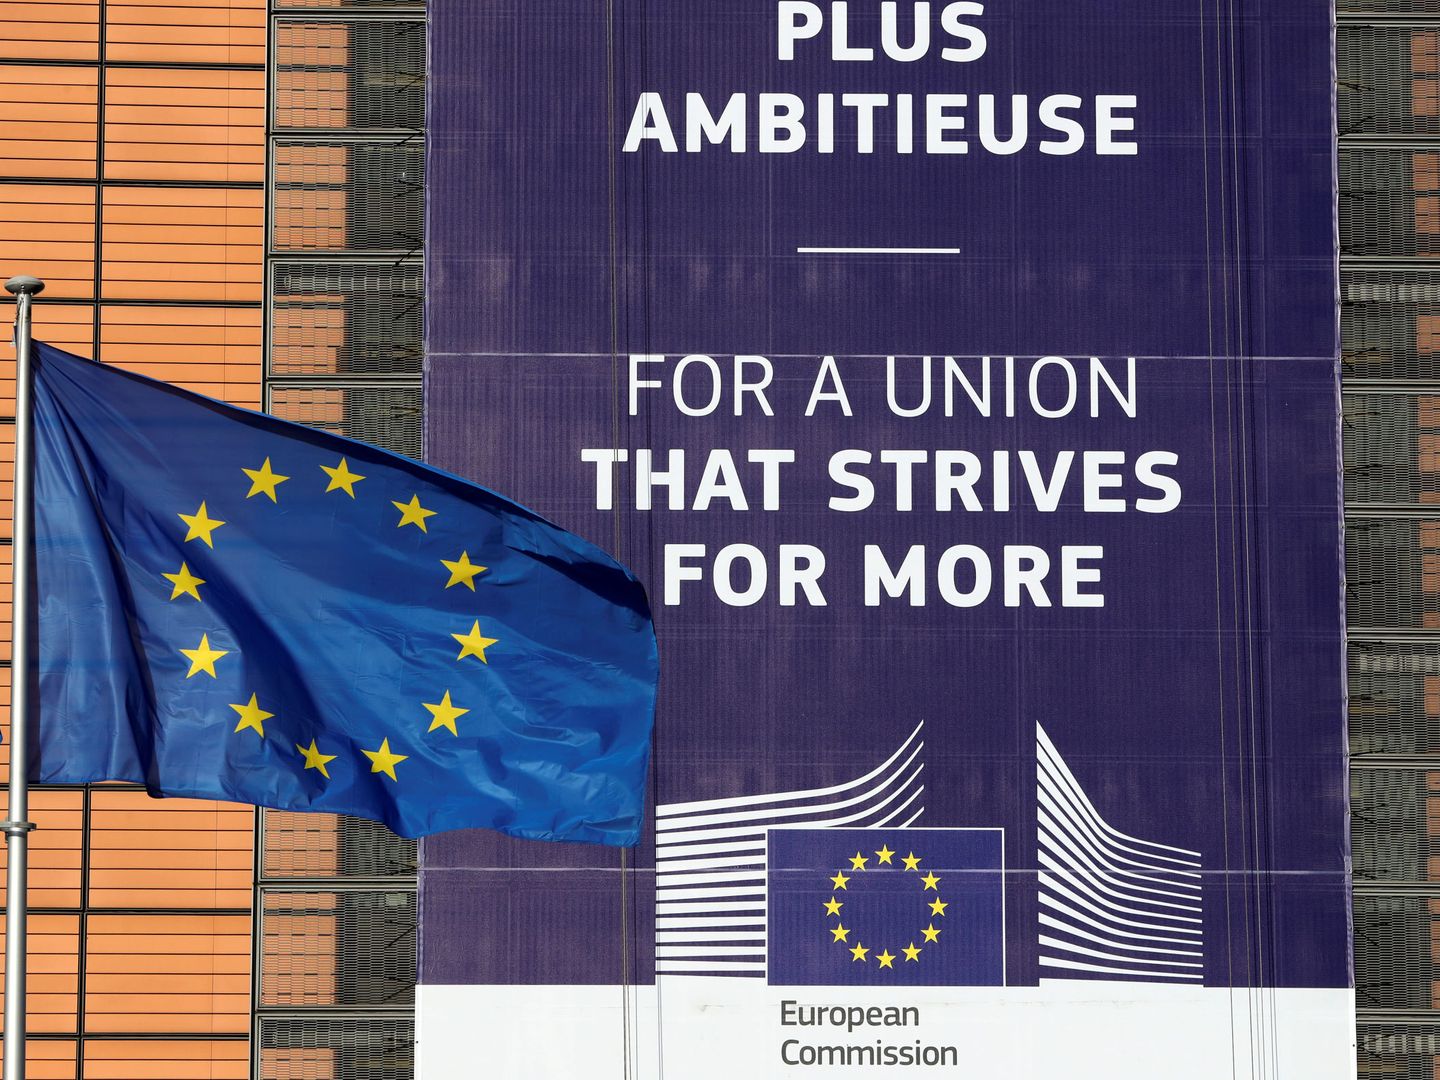 Sede de la Comisión Europea en Bruselas. (Reuters)